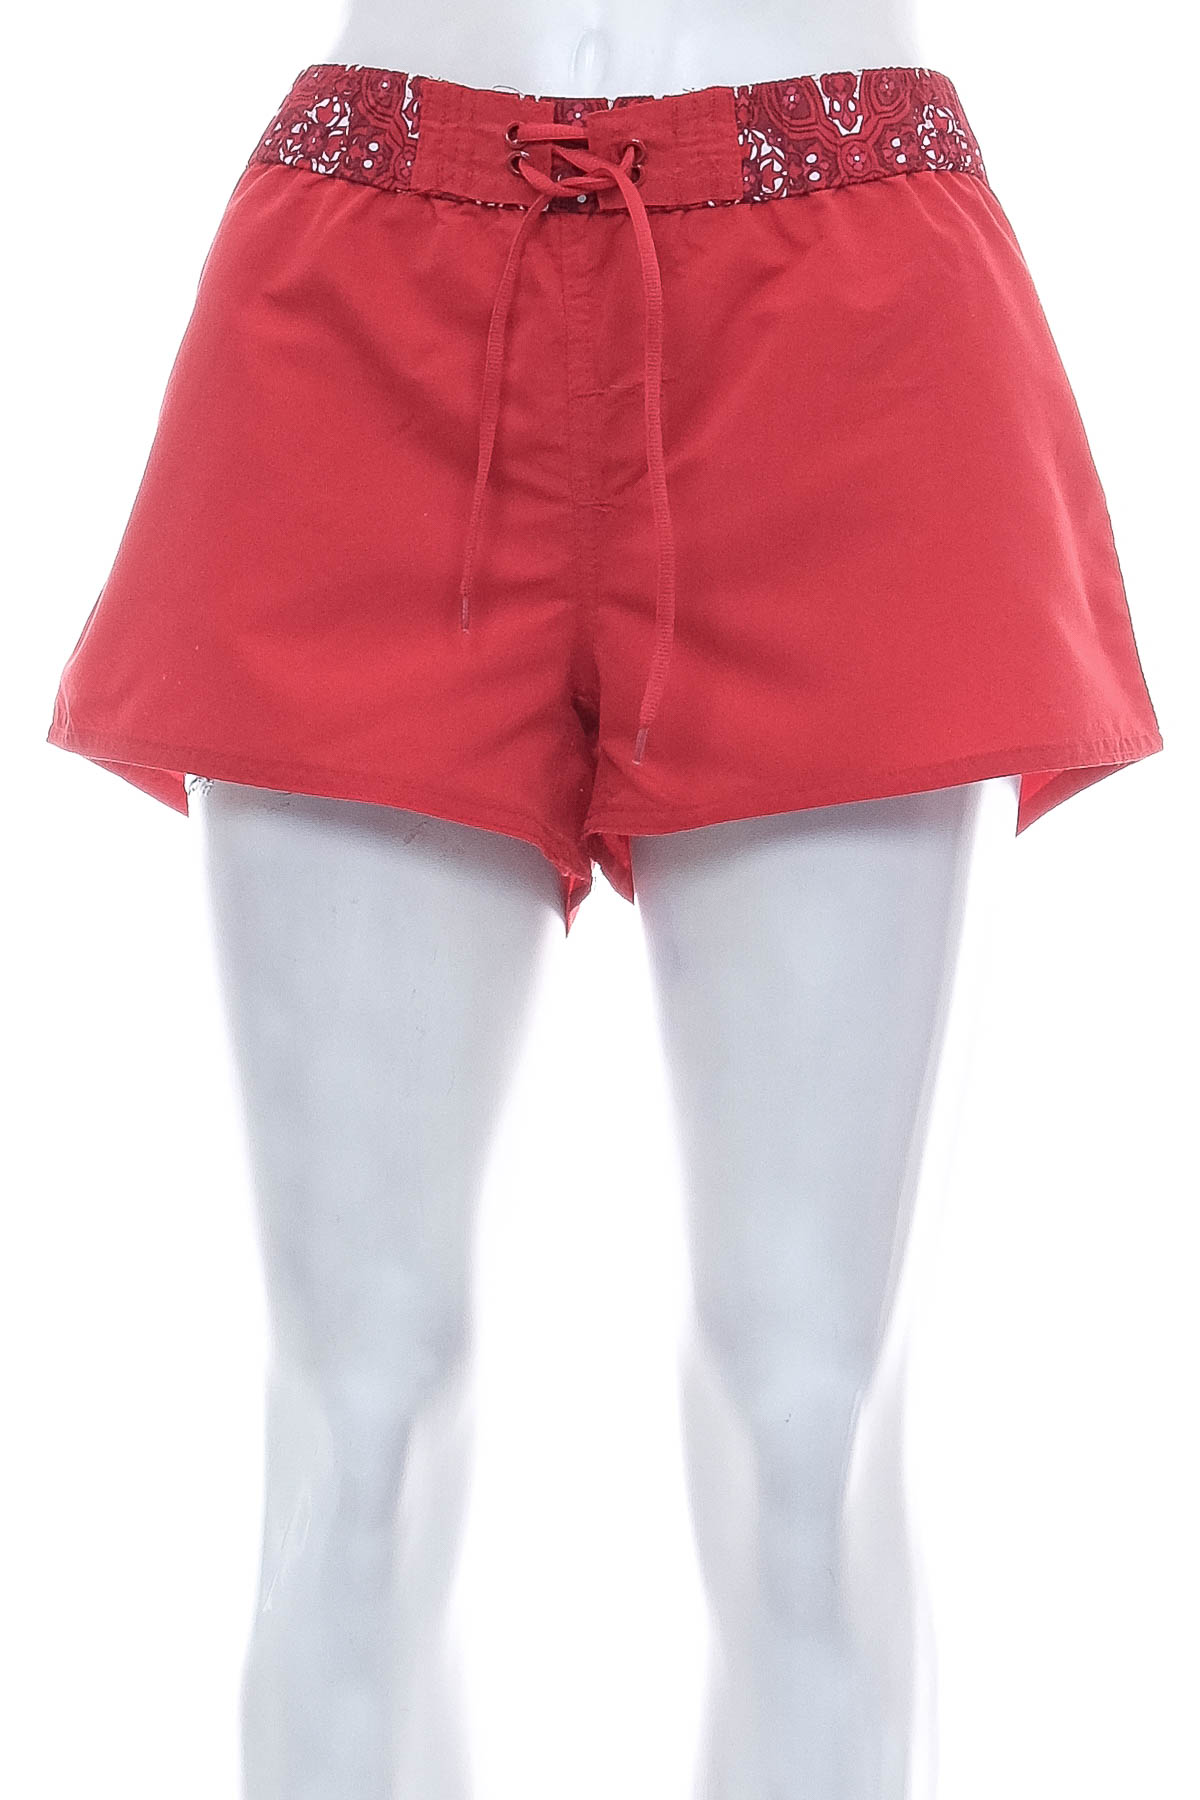 Women's shorts - Janina - 0